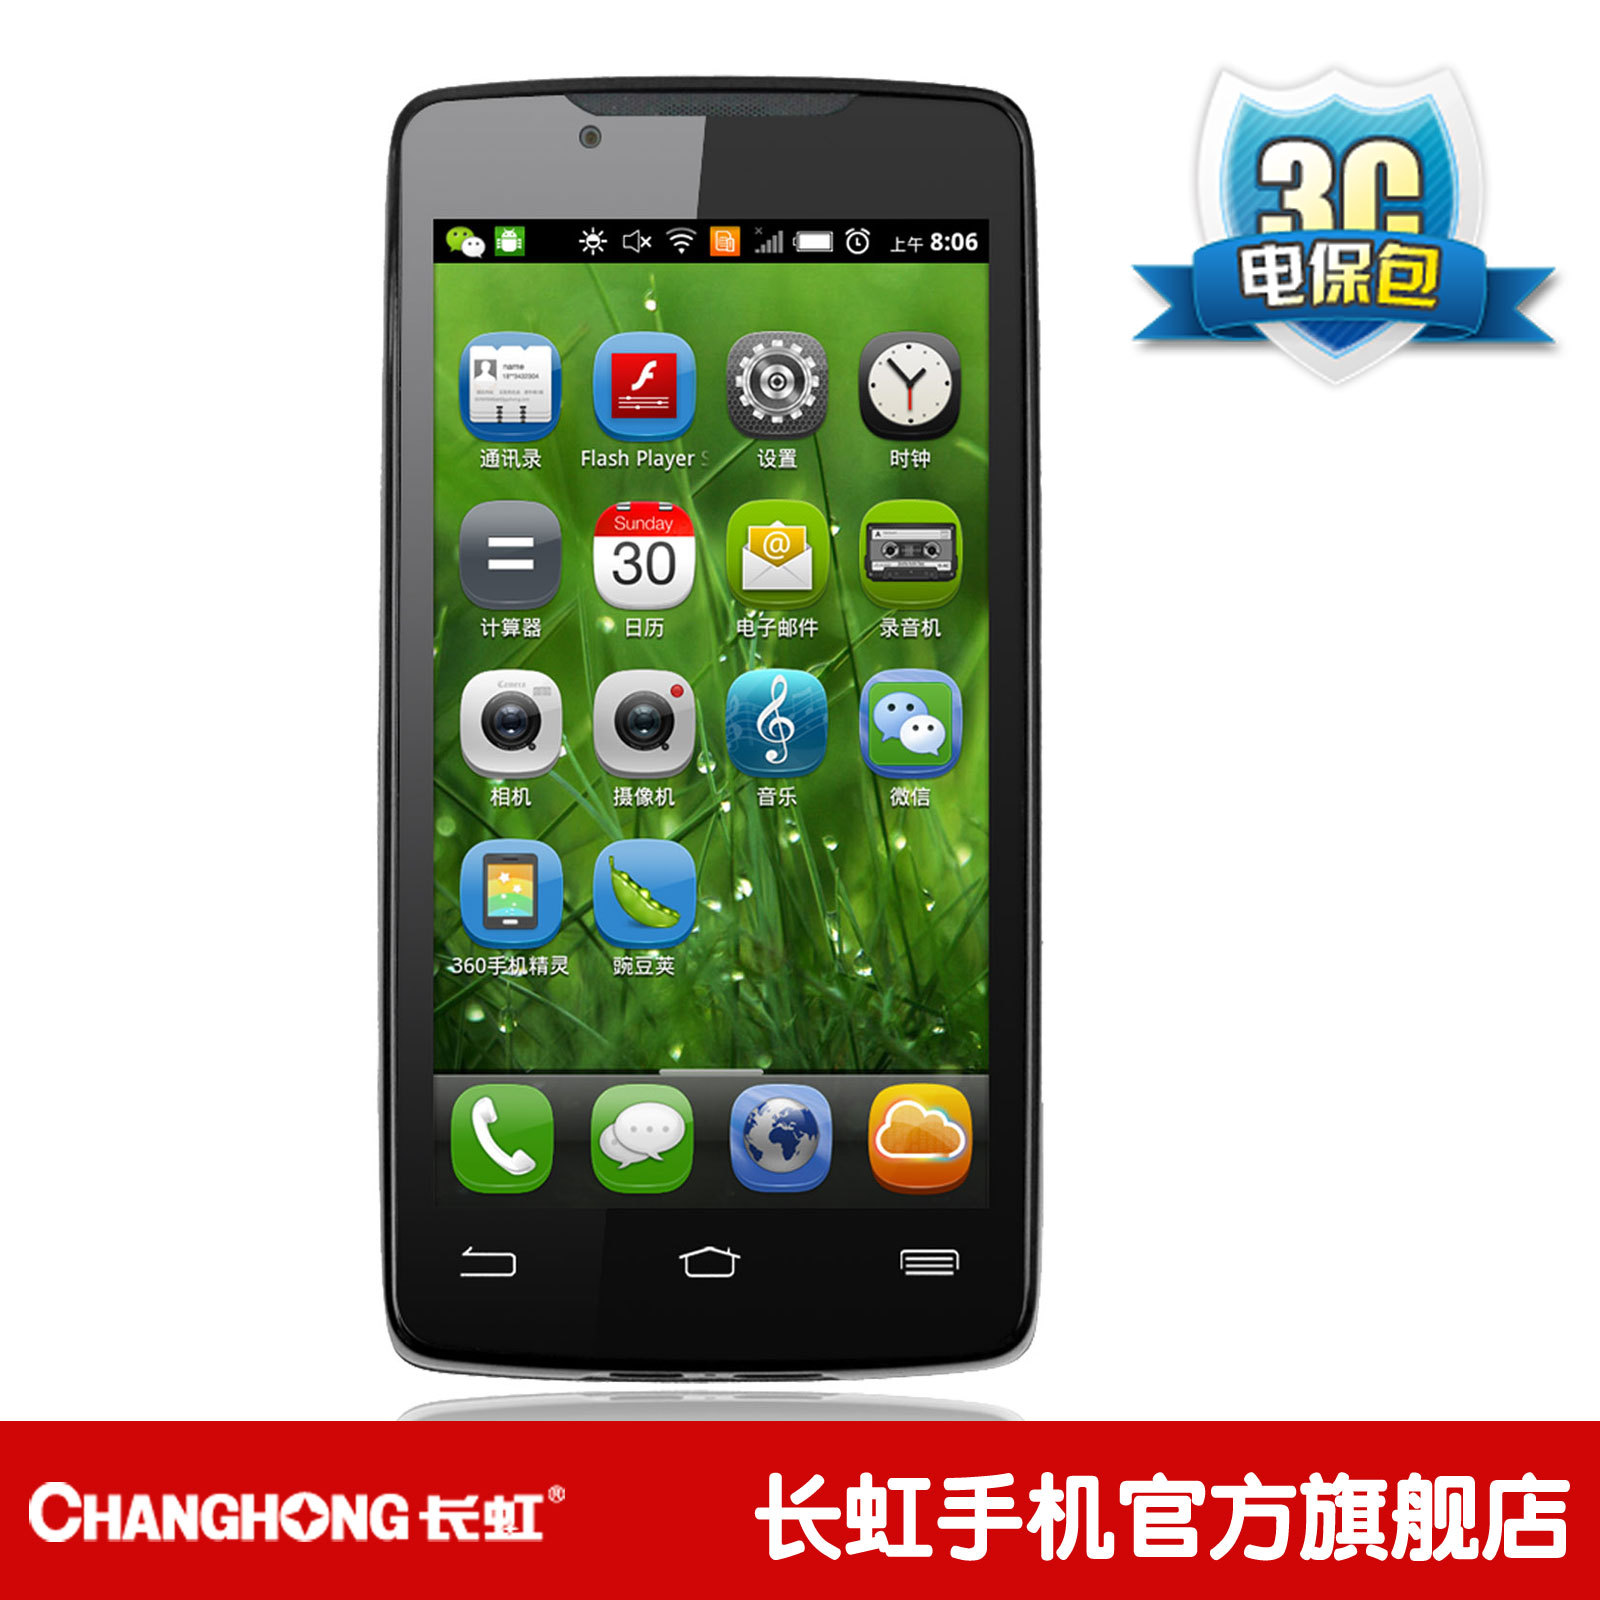 长虹正品智能安卓4.0手机双摄像头触摸屏Changhong/长虹 Z-ME_明瑞数码科技